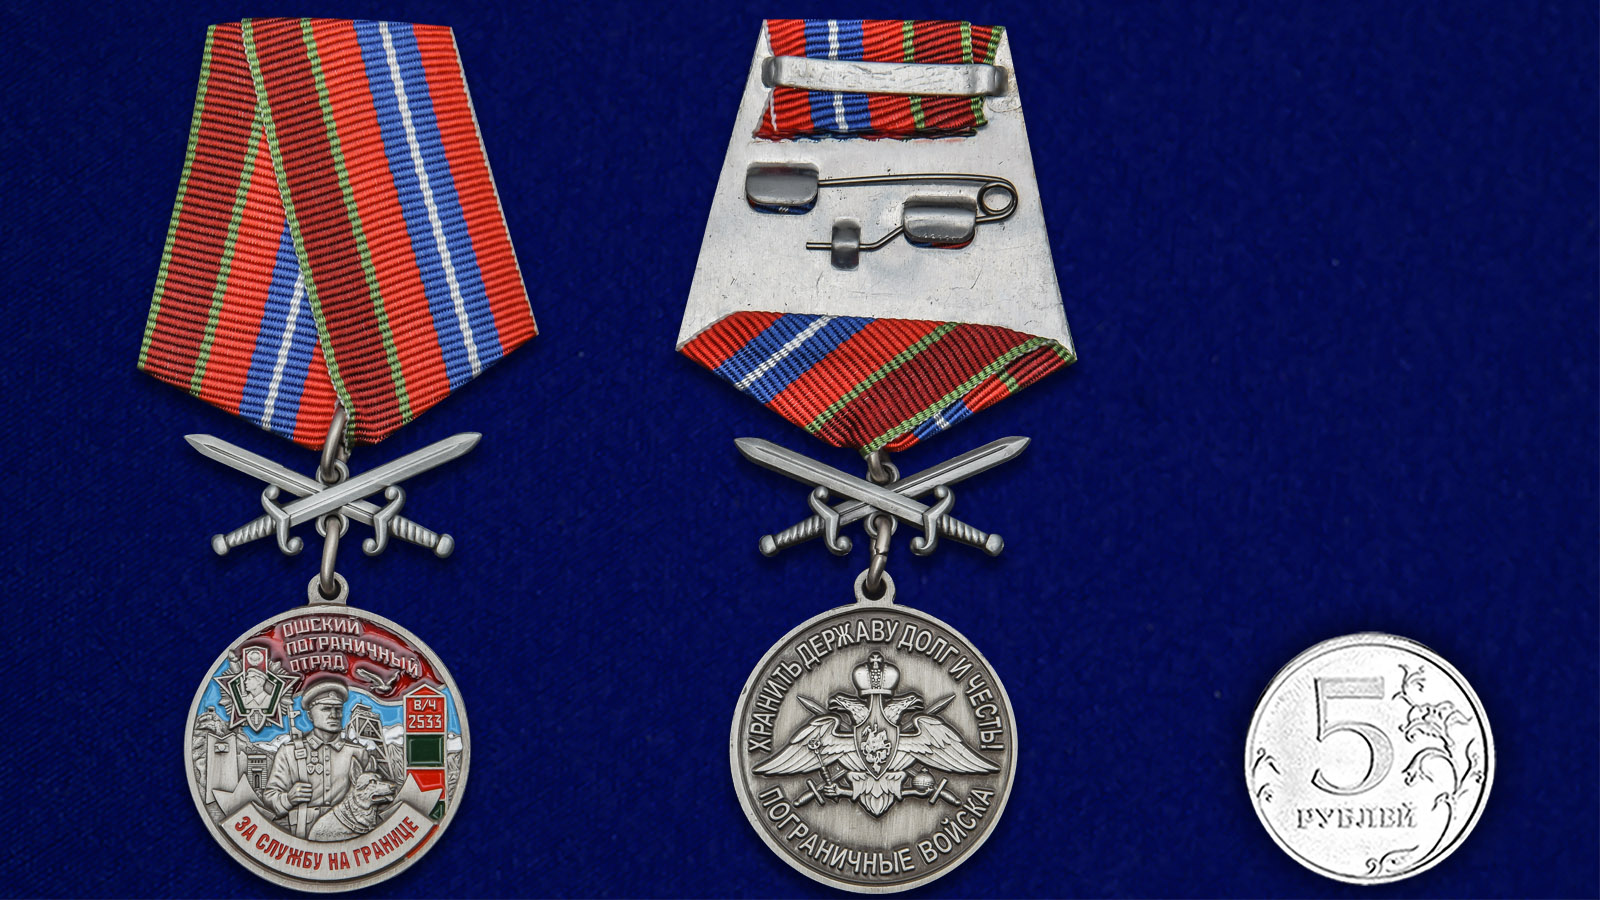 Памятная медаль "За службу в Ошском пограничном отряде" 